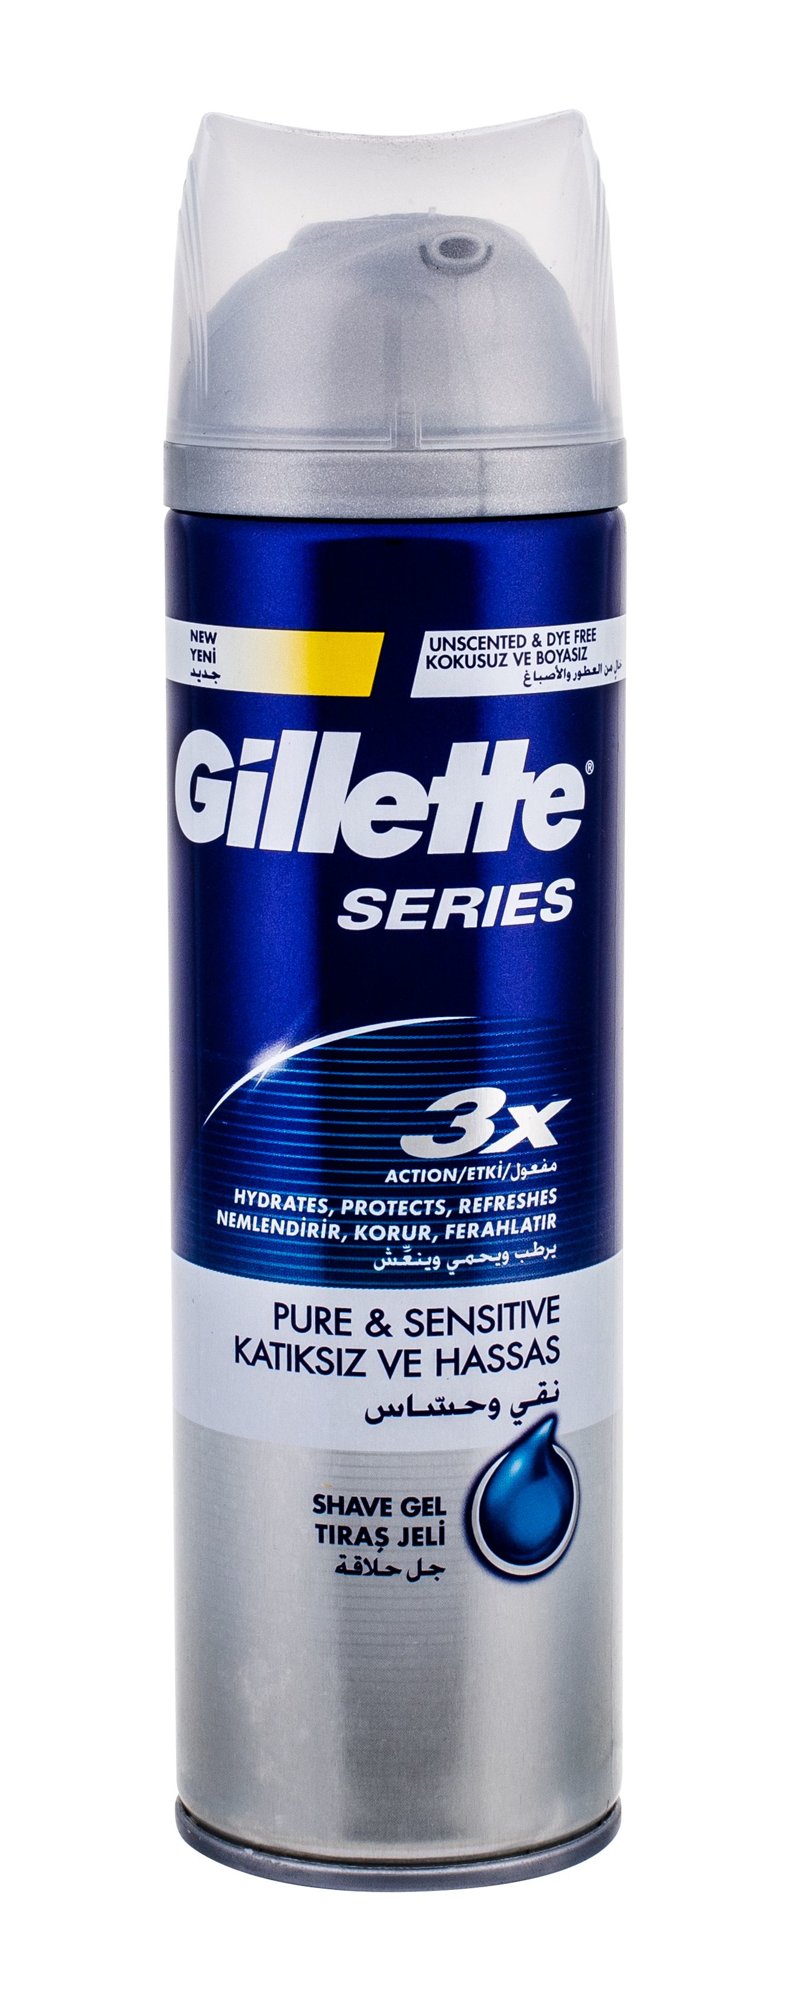 Gillette Series Pure & Sensitive skutimosi gelis